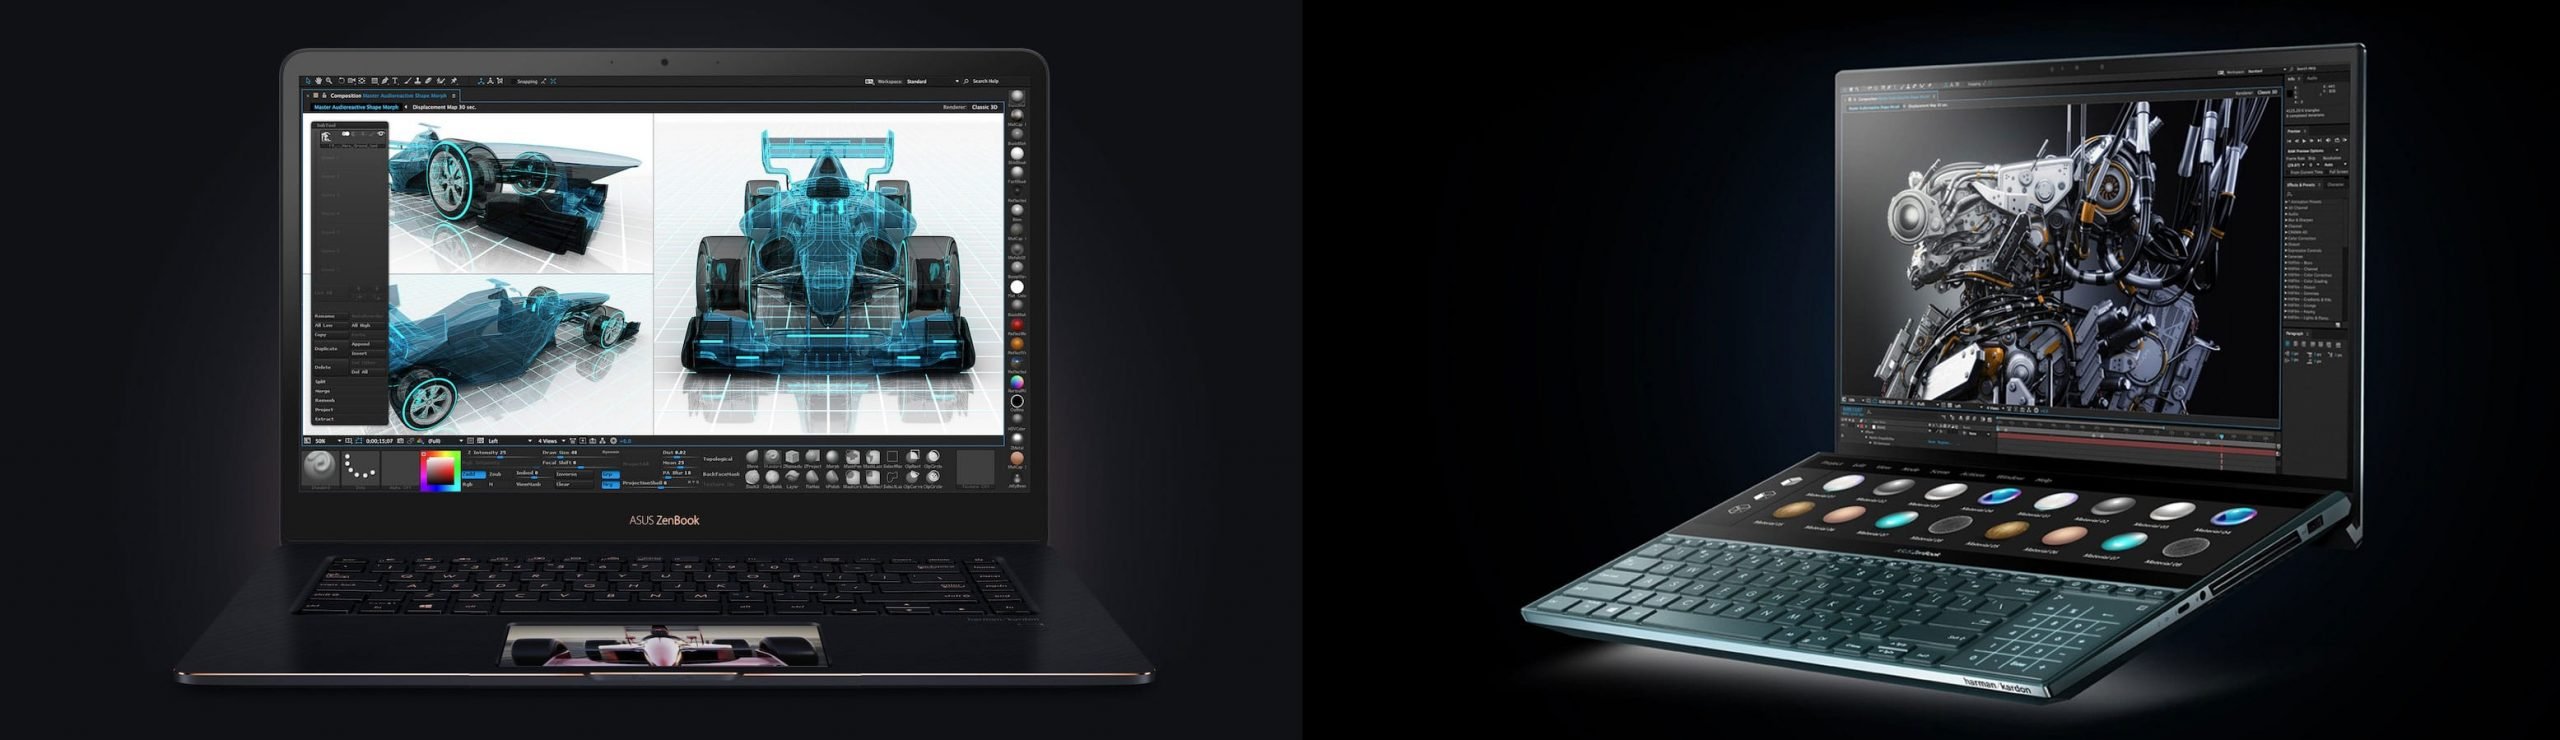 2018 ZenBook Pro (vänster) vs 2019 ZenBook pro Duo (höger)